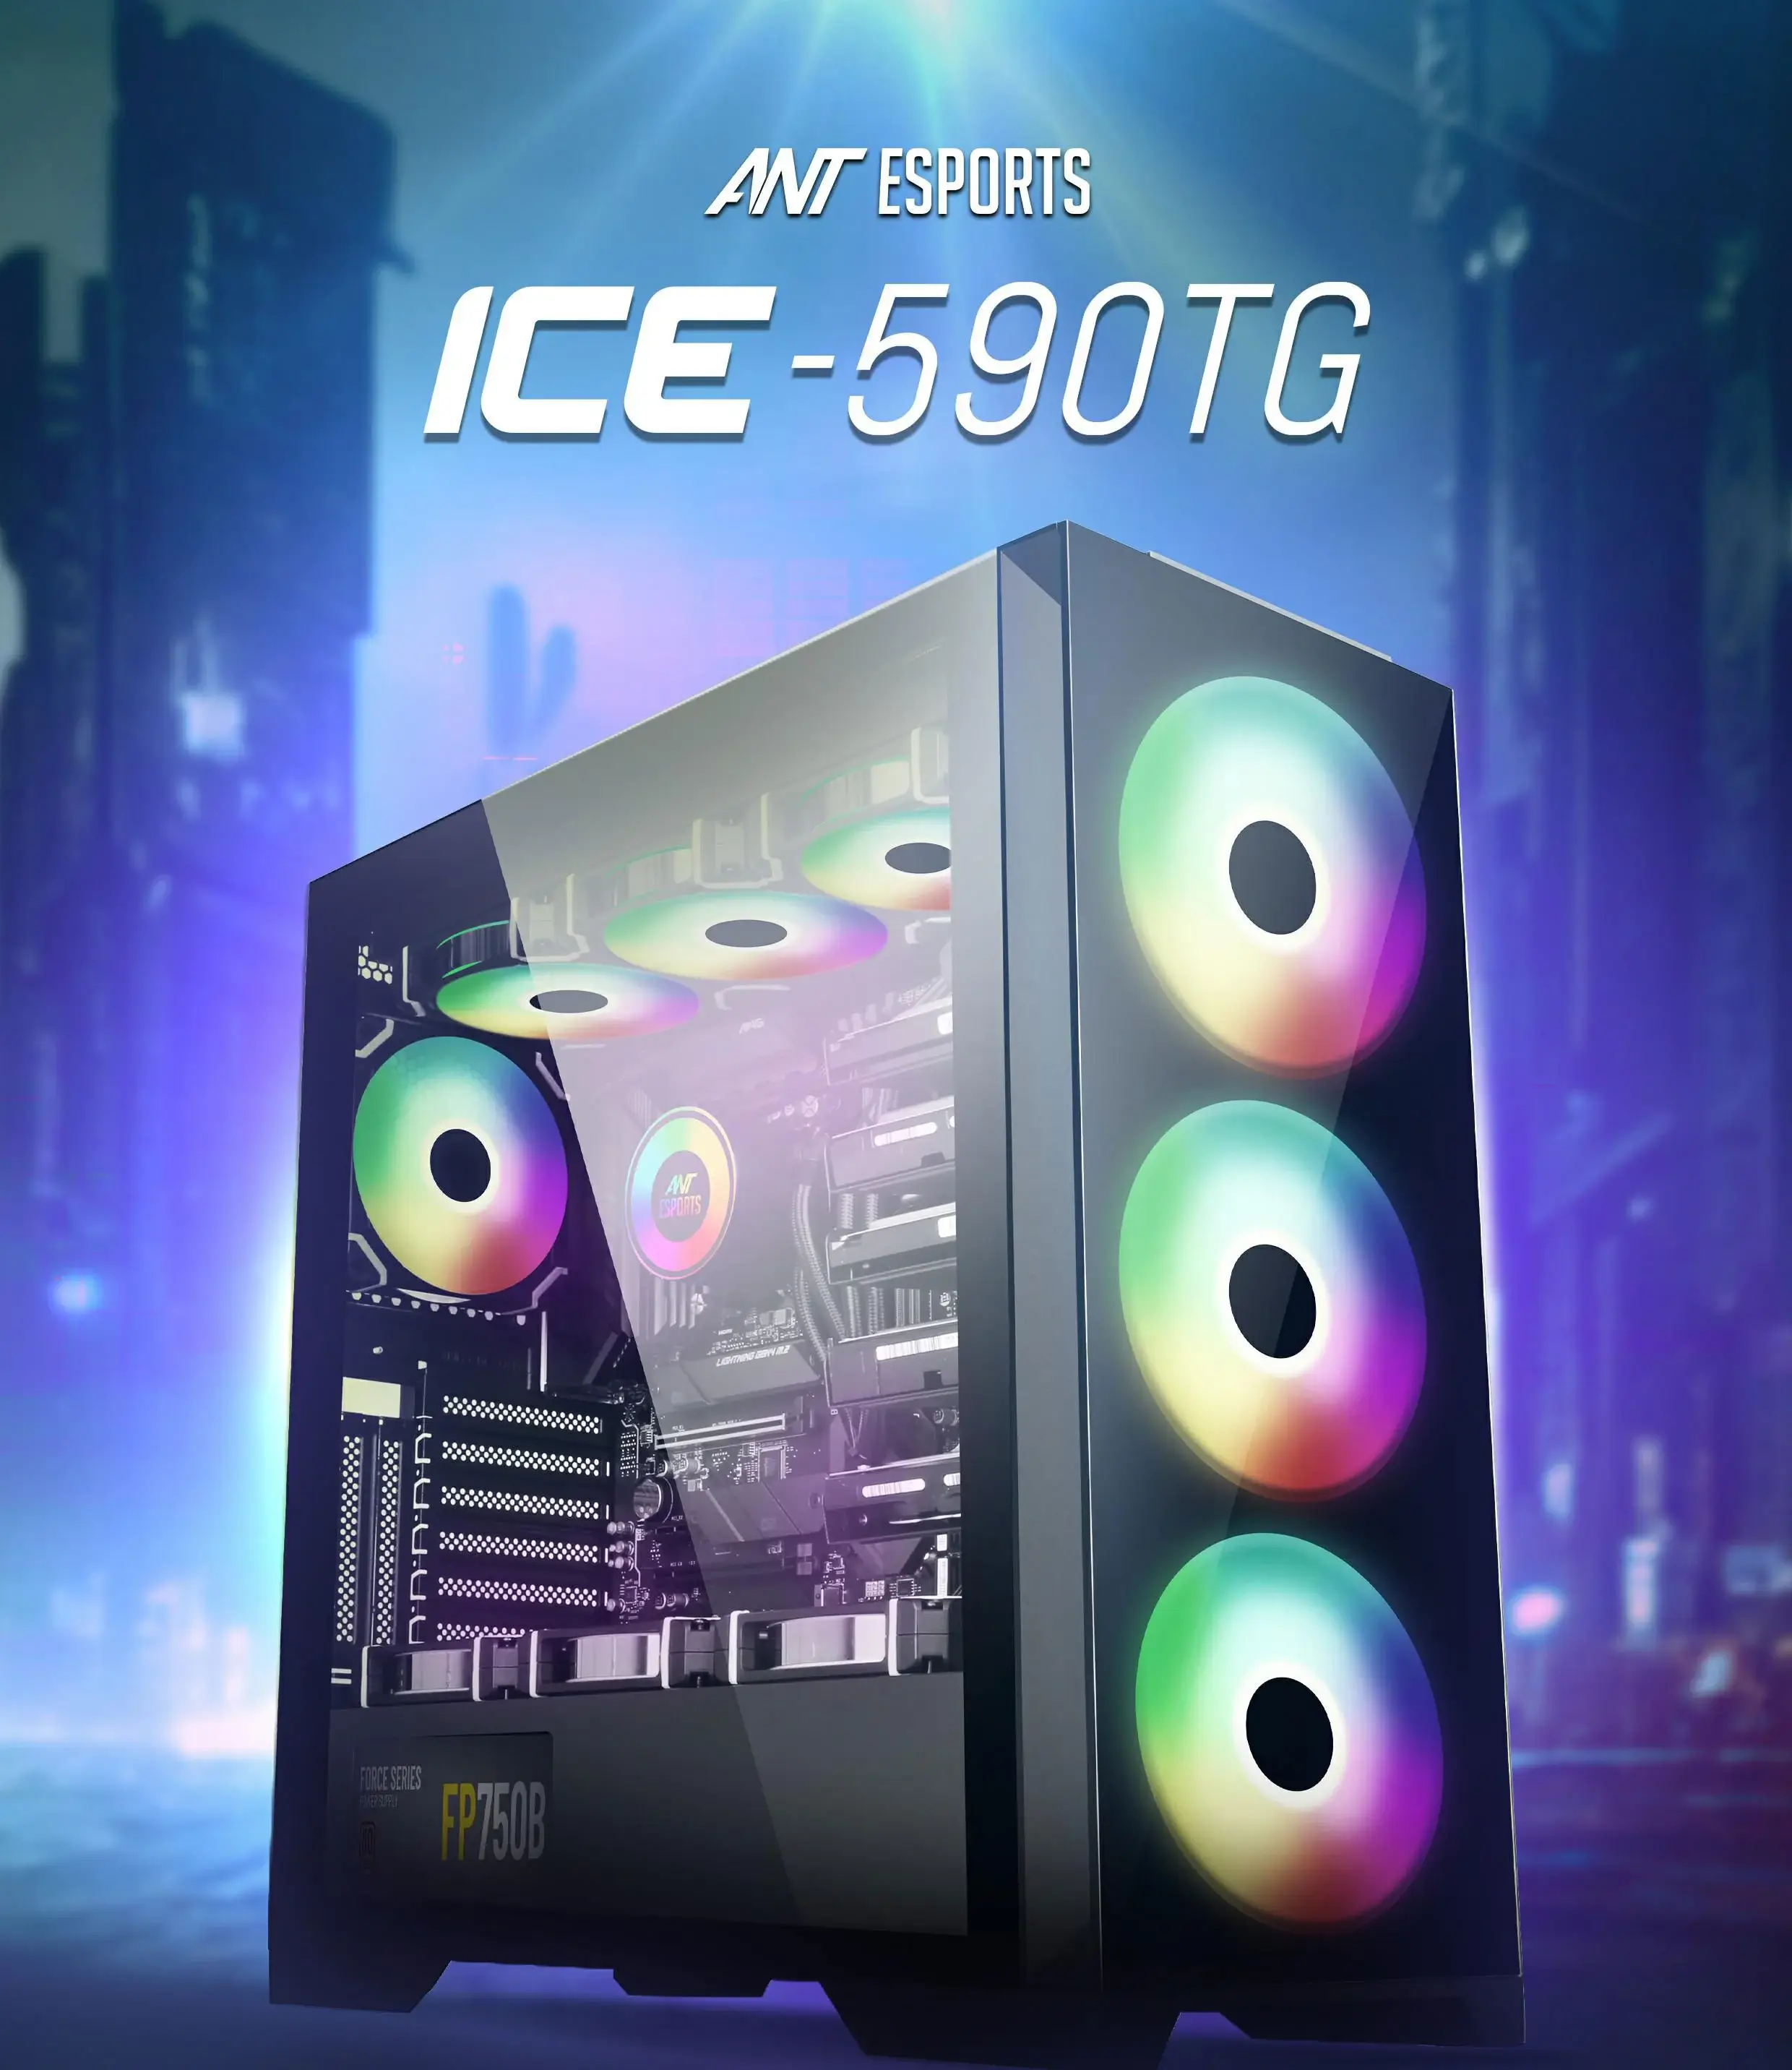 Ant Esports ICE - 590TG